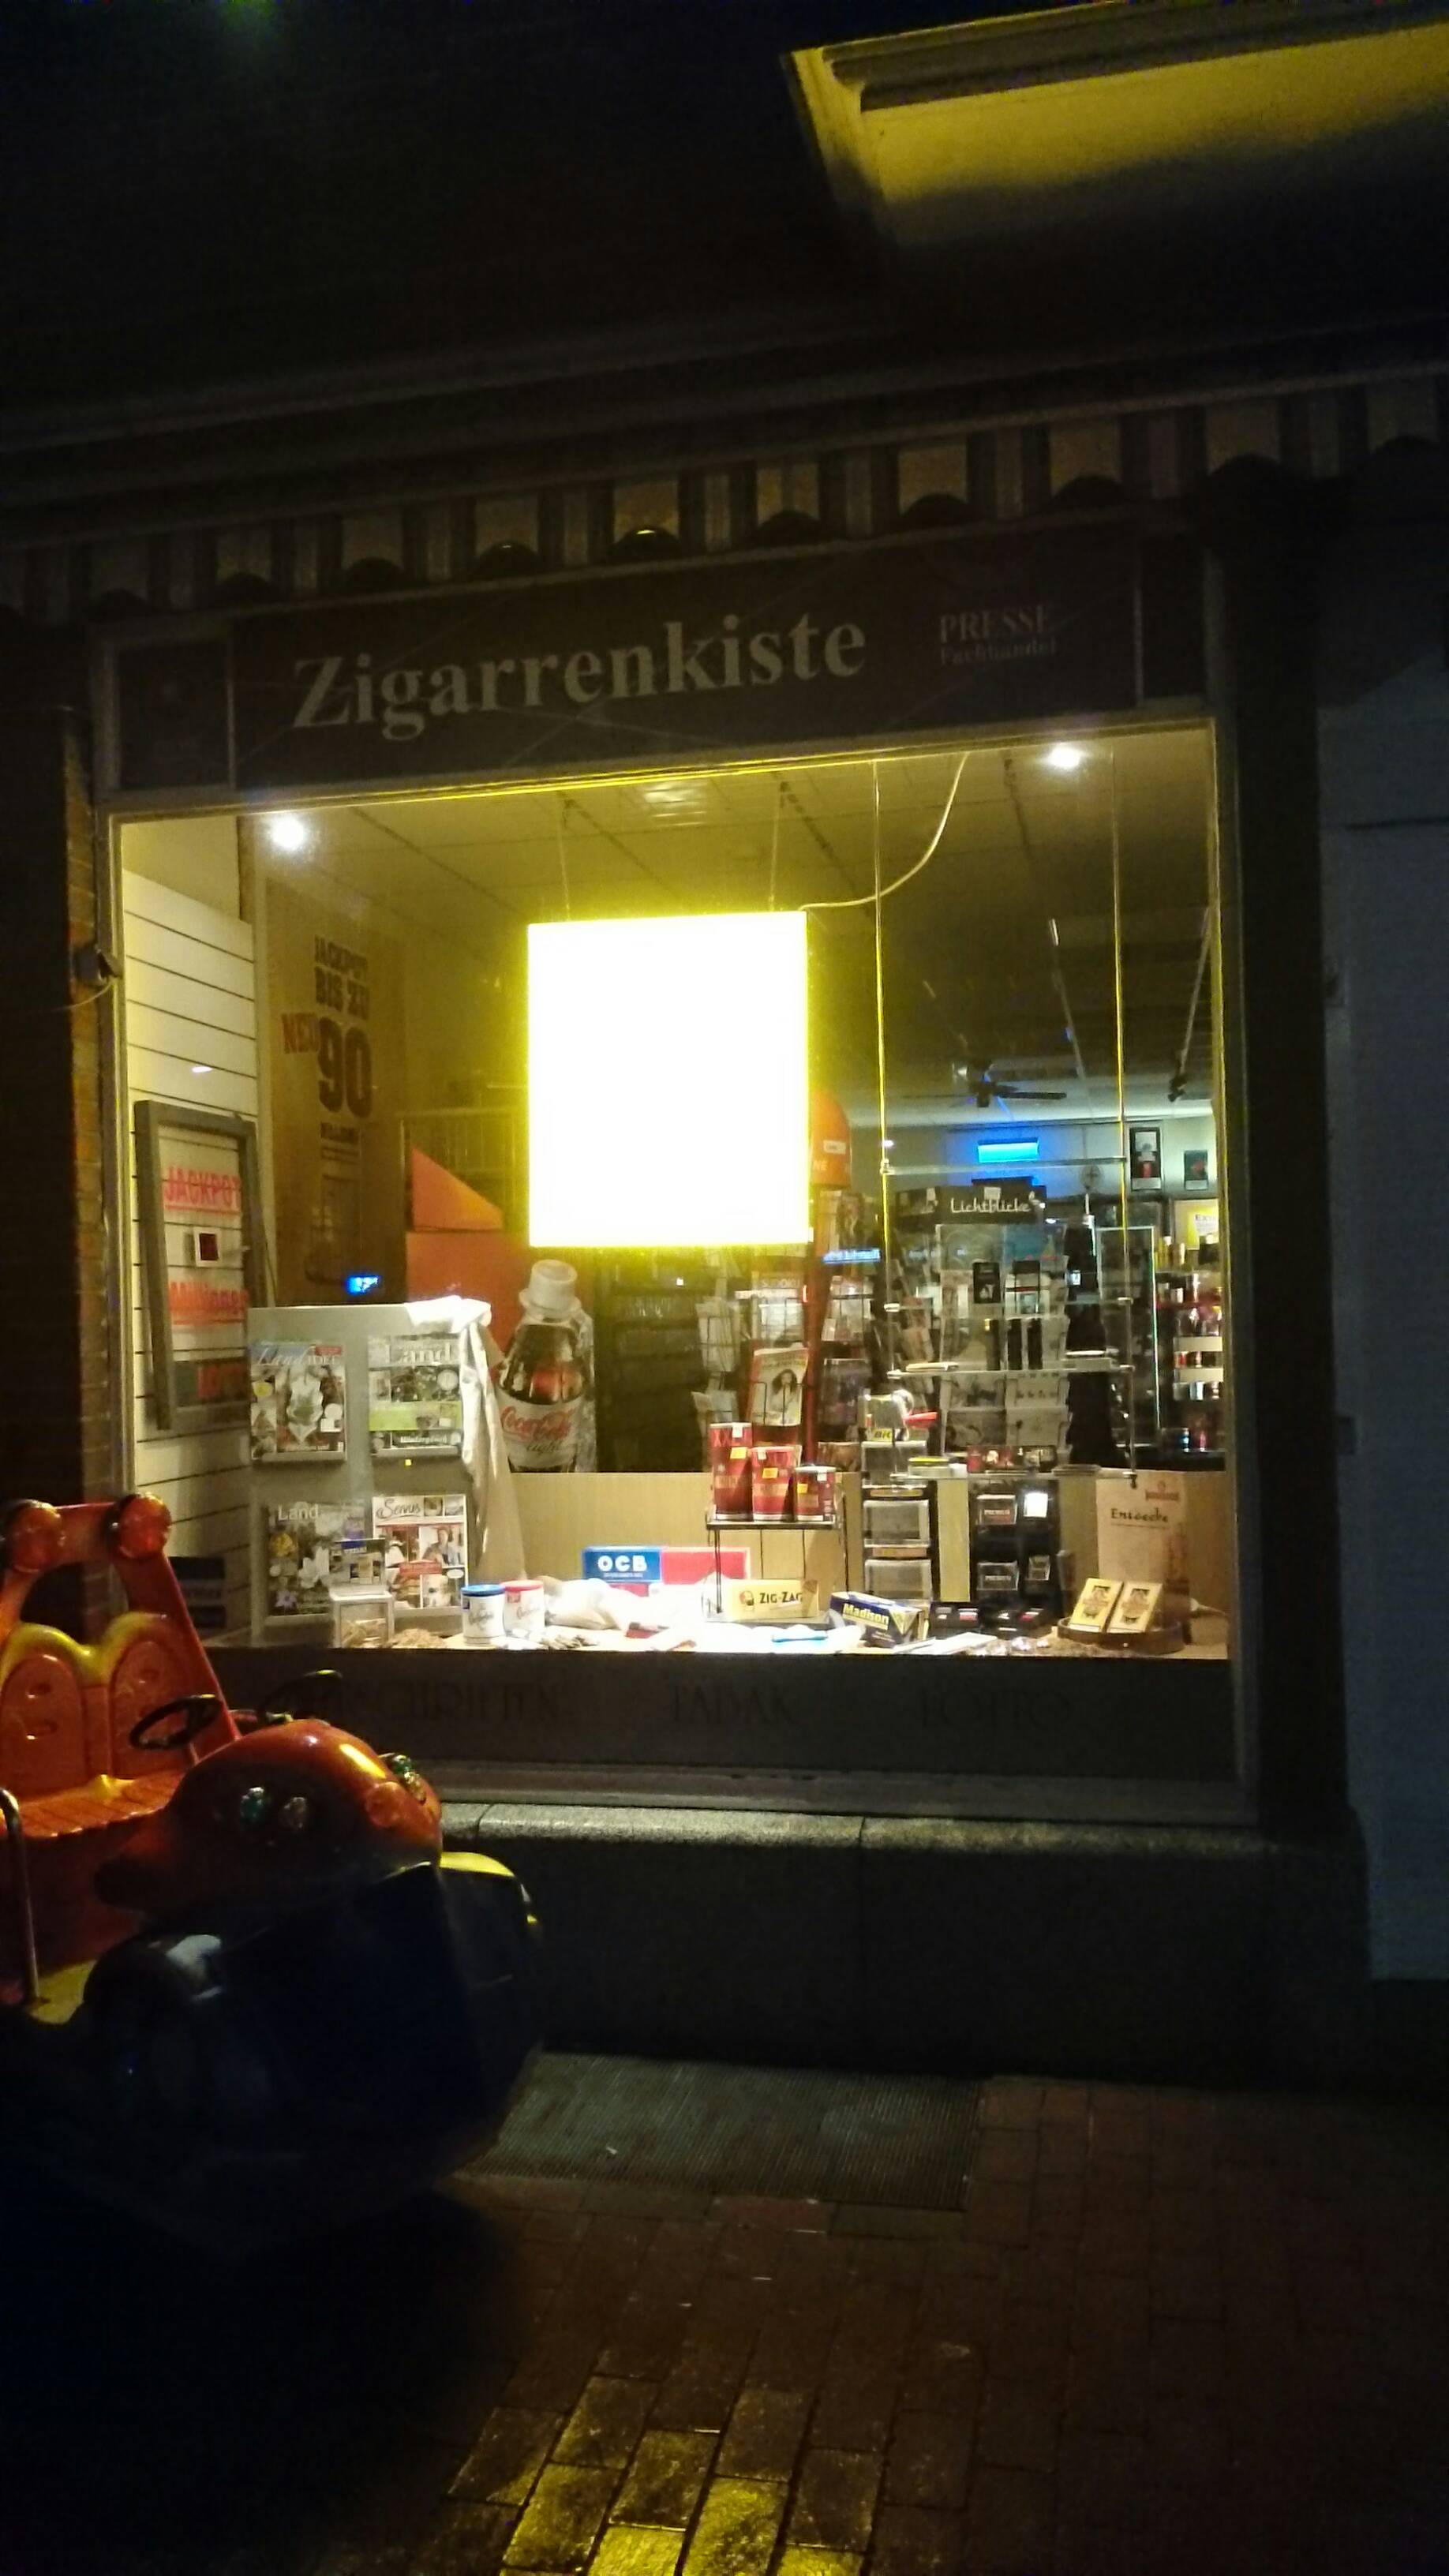 Bild 1 Hermes Paketshop (Die Zigarrenkiste) in Ratzeburg